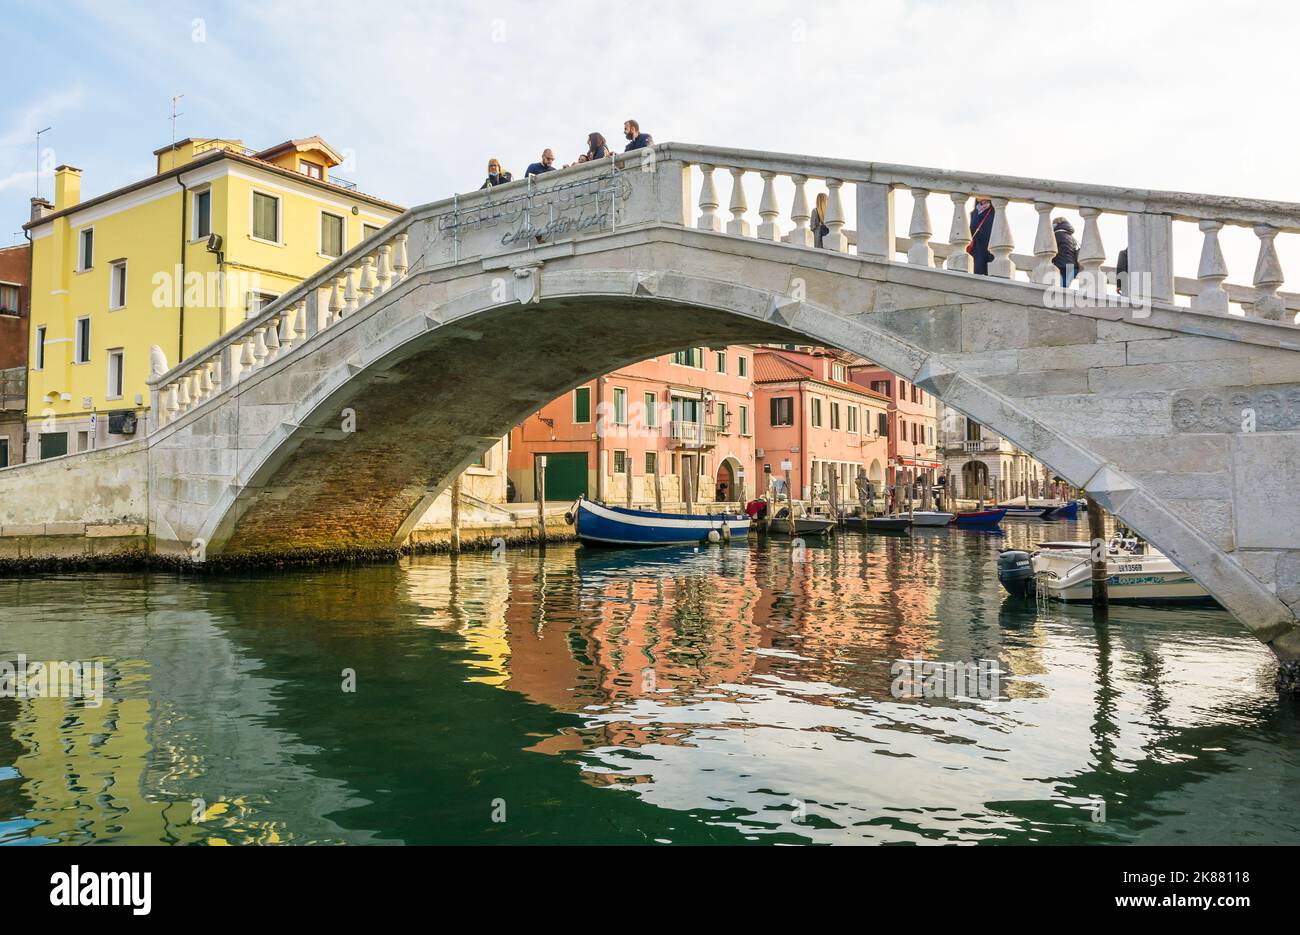 Le pont de Vigo dans le centre historique de la ville de Chioggia, lagune vénitienne, province de Venise, nord de l'italie - Europe Banque D'Images